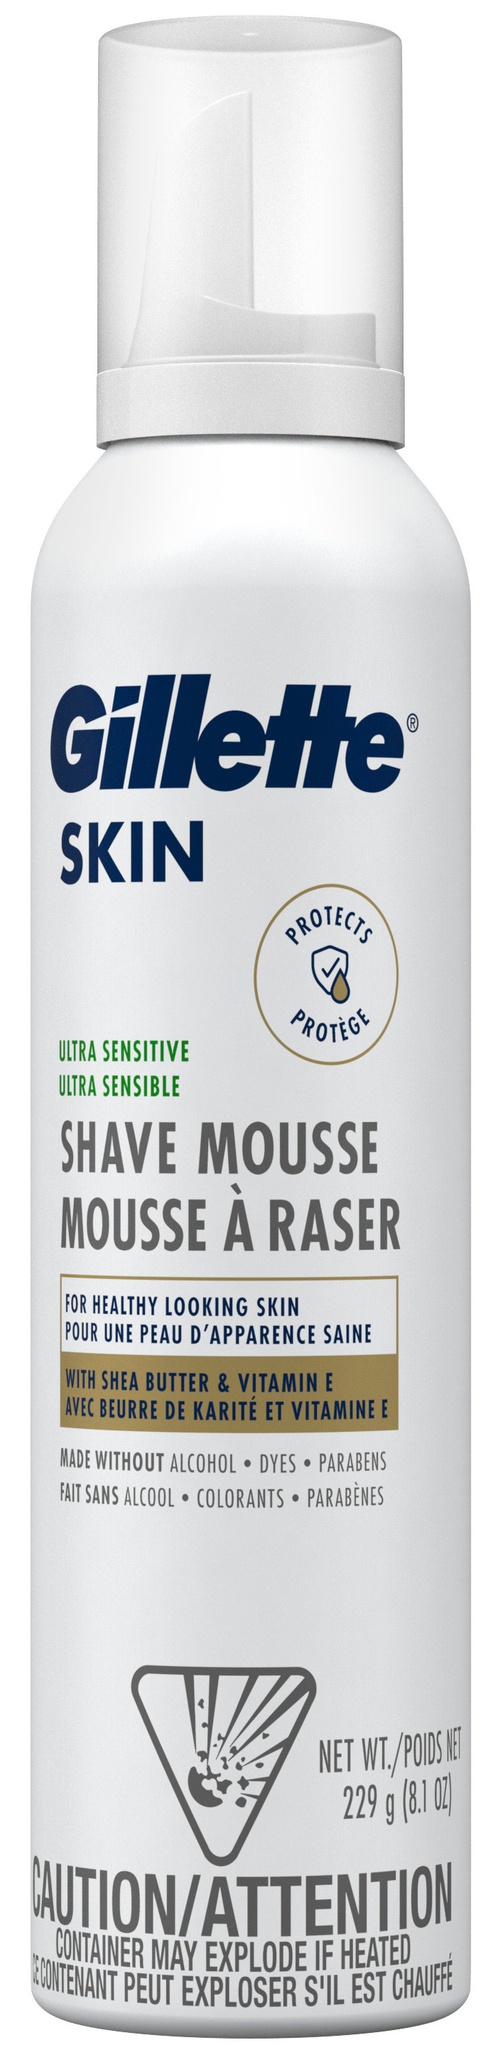 Gillette Skin Ultra Sensitive Shave Mousse